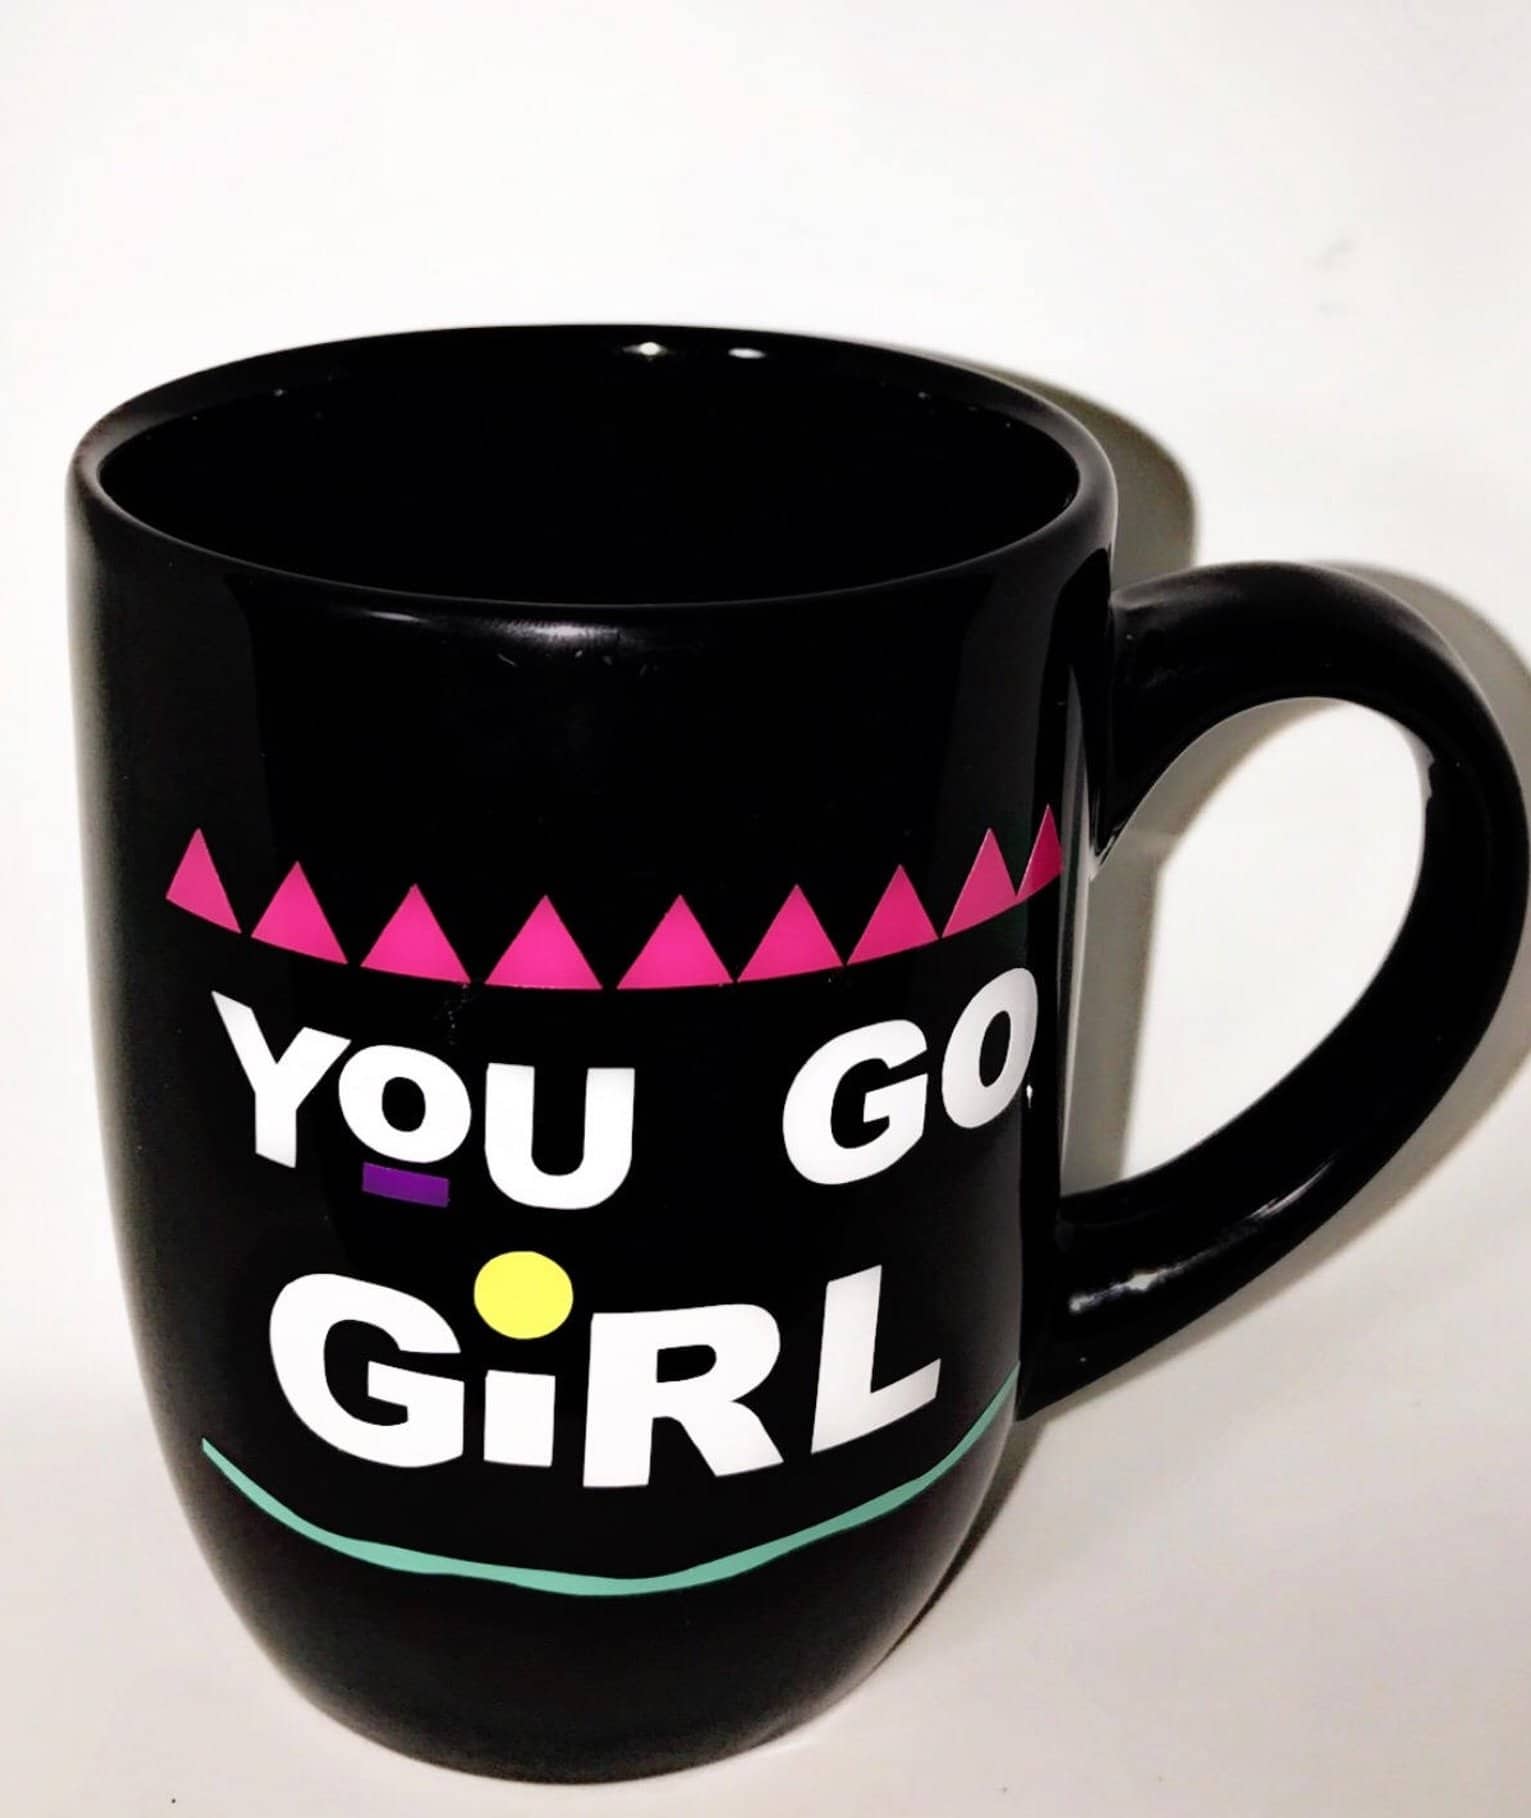 https://www.essence.com/wp-content/uploads/2019/04/You-Go-Girl-Mug.jpg